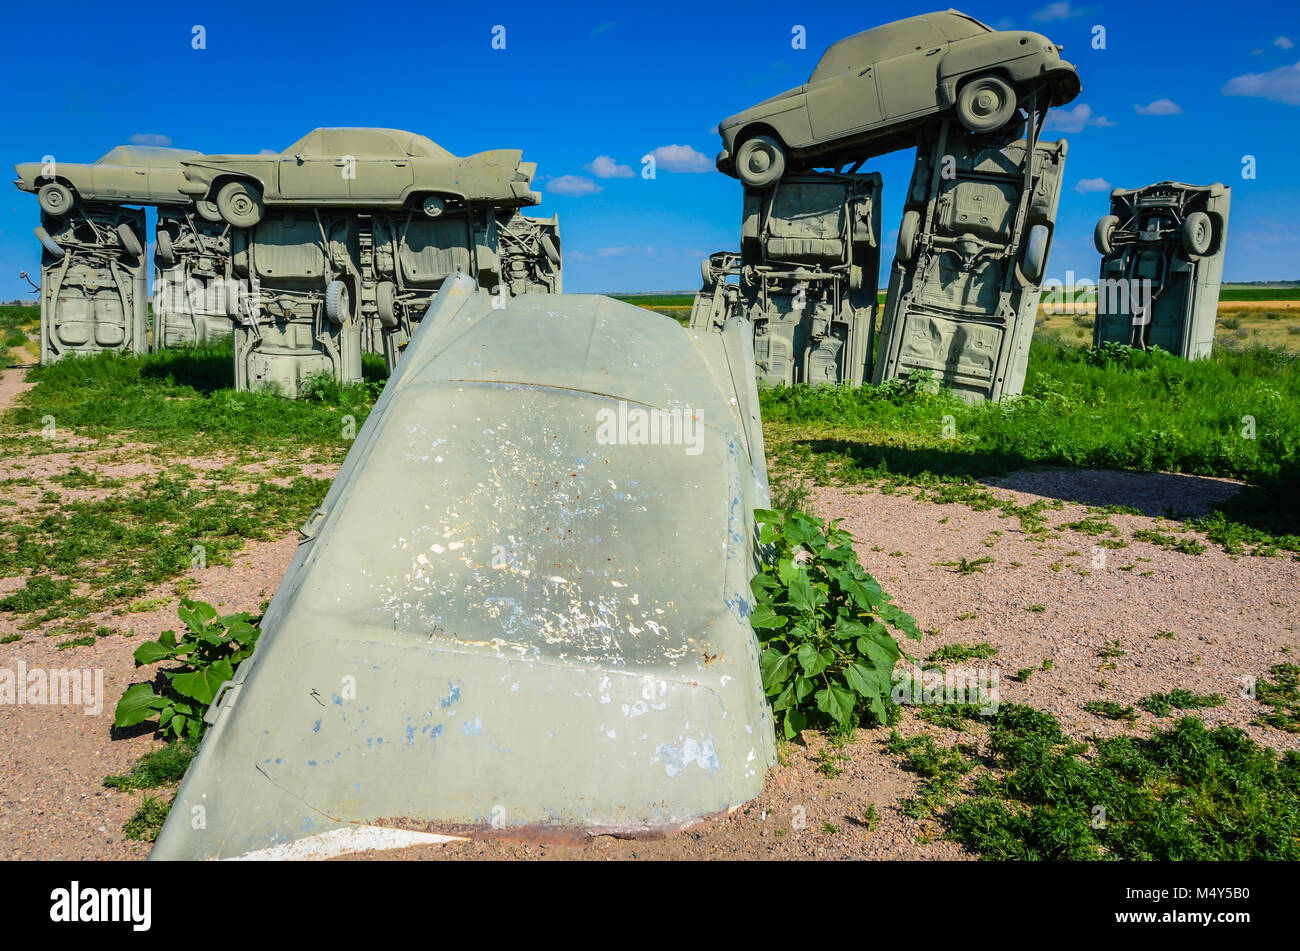 Outdoor Skulptur aus lackiertem grauen Pkw, angeordnet wie Stonehenge, in einem Nebraska Feld zu schauen. Dies ist eine beliebte Attraktion am Straßenrand in der Mitte der Stockfoto